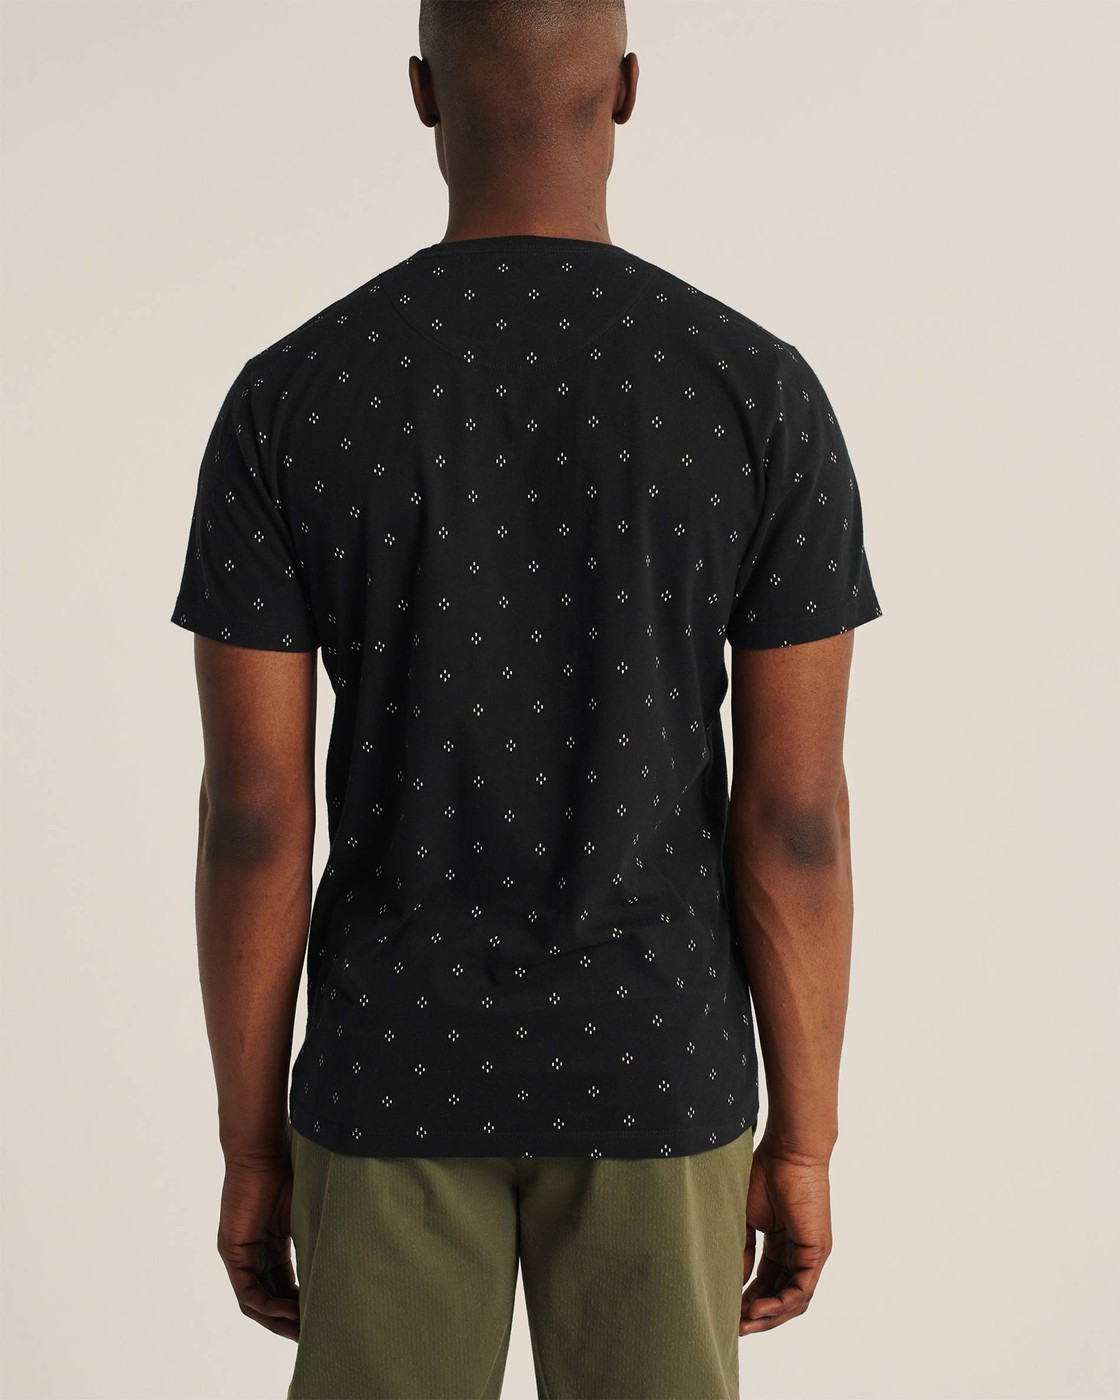 Черная футболка - мужская футболка Abercrombie & Fitch, L, L